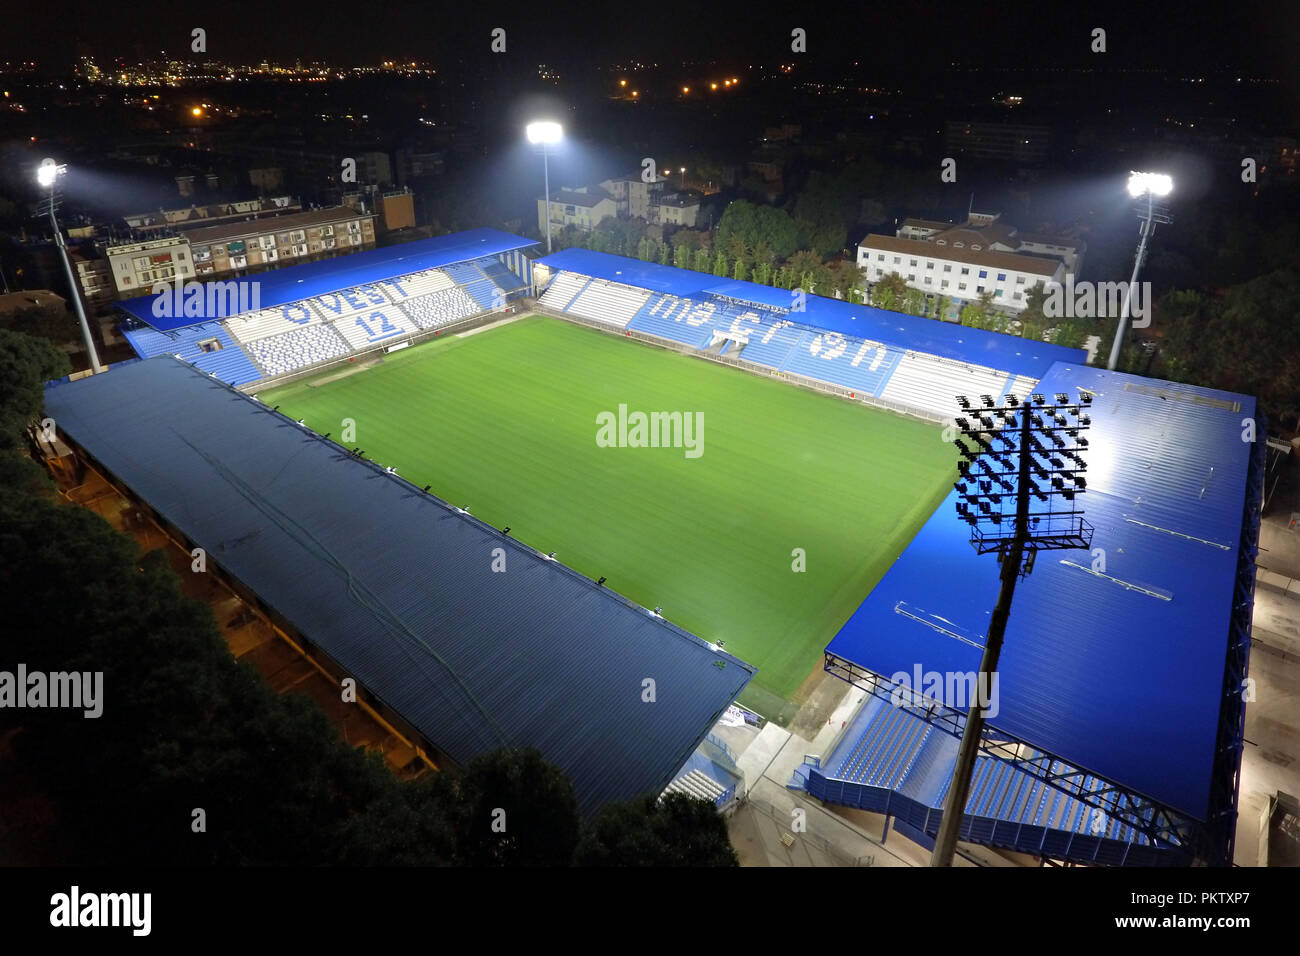 Stadio Paolo Mazza - O que saber antes de ir (ATUALIZADO 2023)